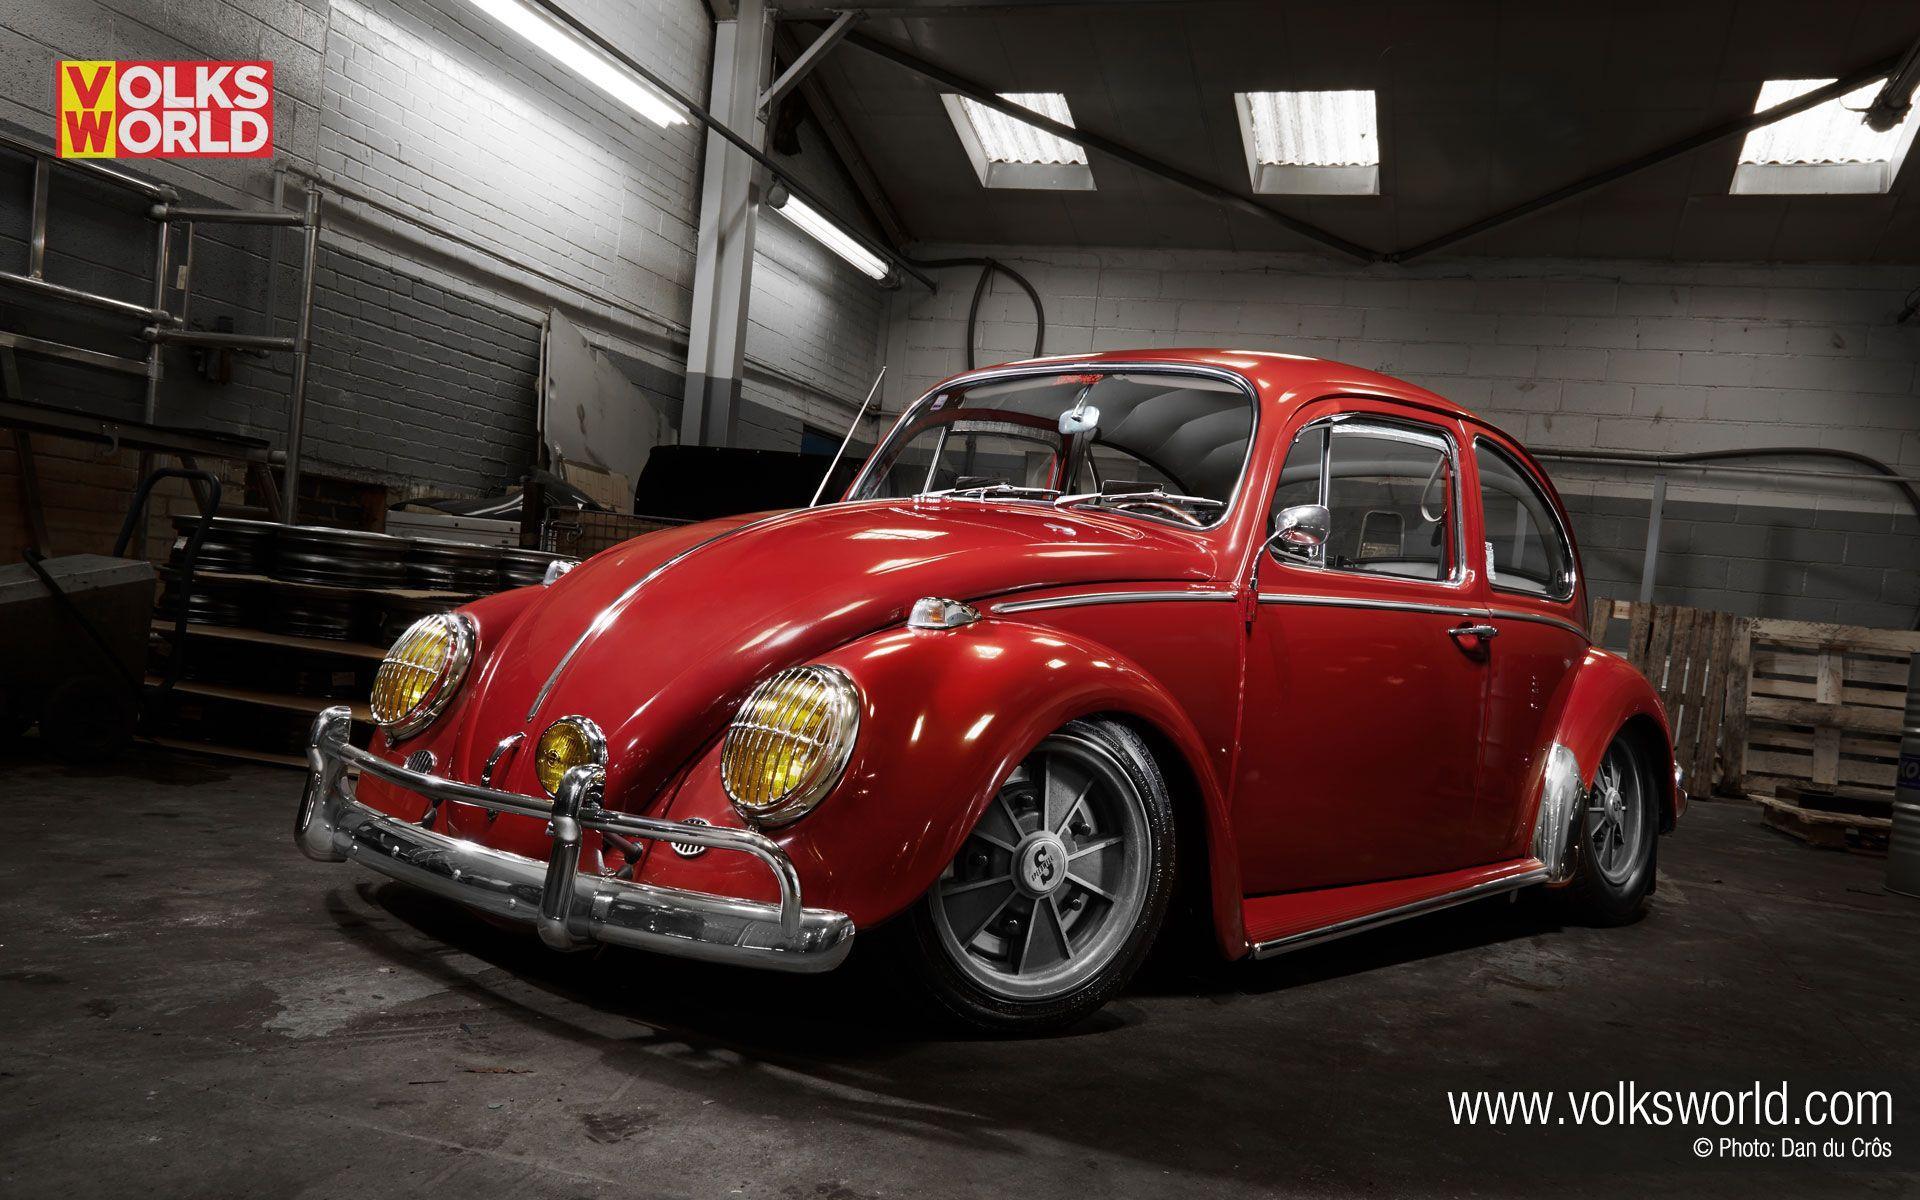 Volkswagen Beetle Wallpapers - Wallpaper Cave